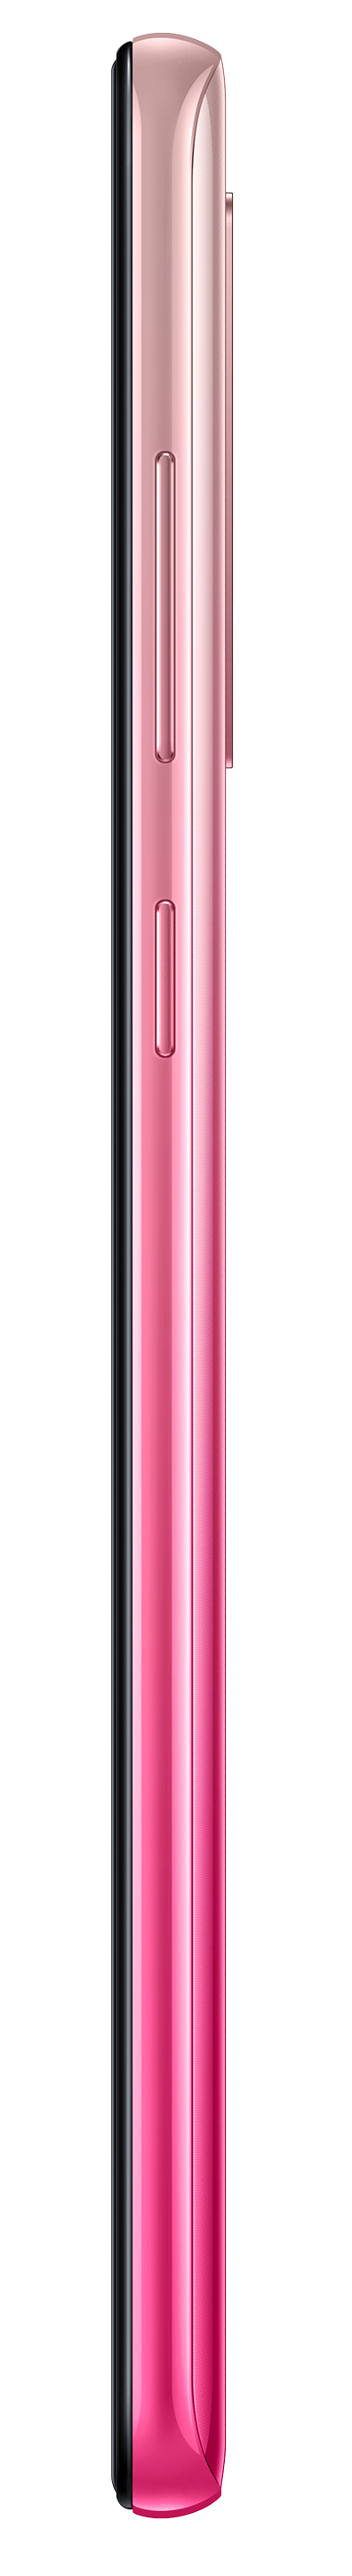 Samsung Galaxy A9 Smartphone 128GB Dual SIM Pink